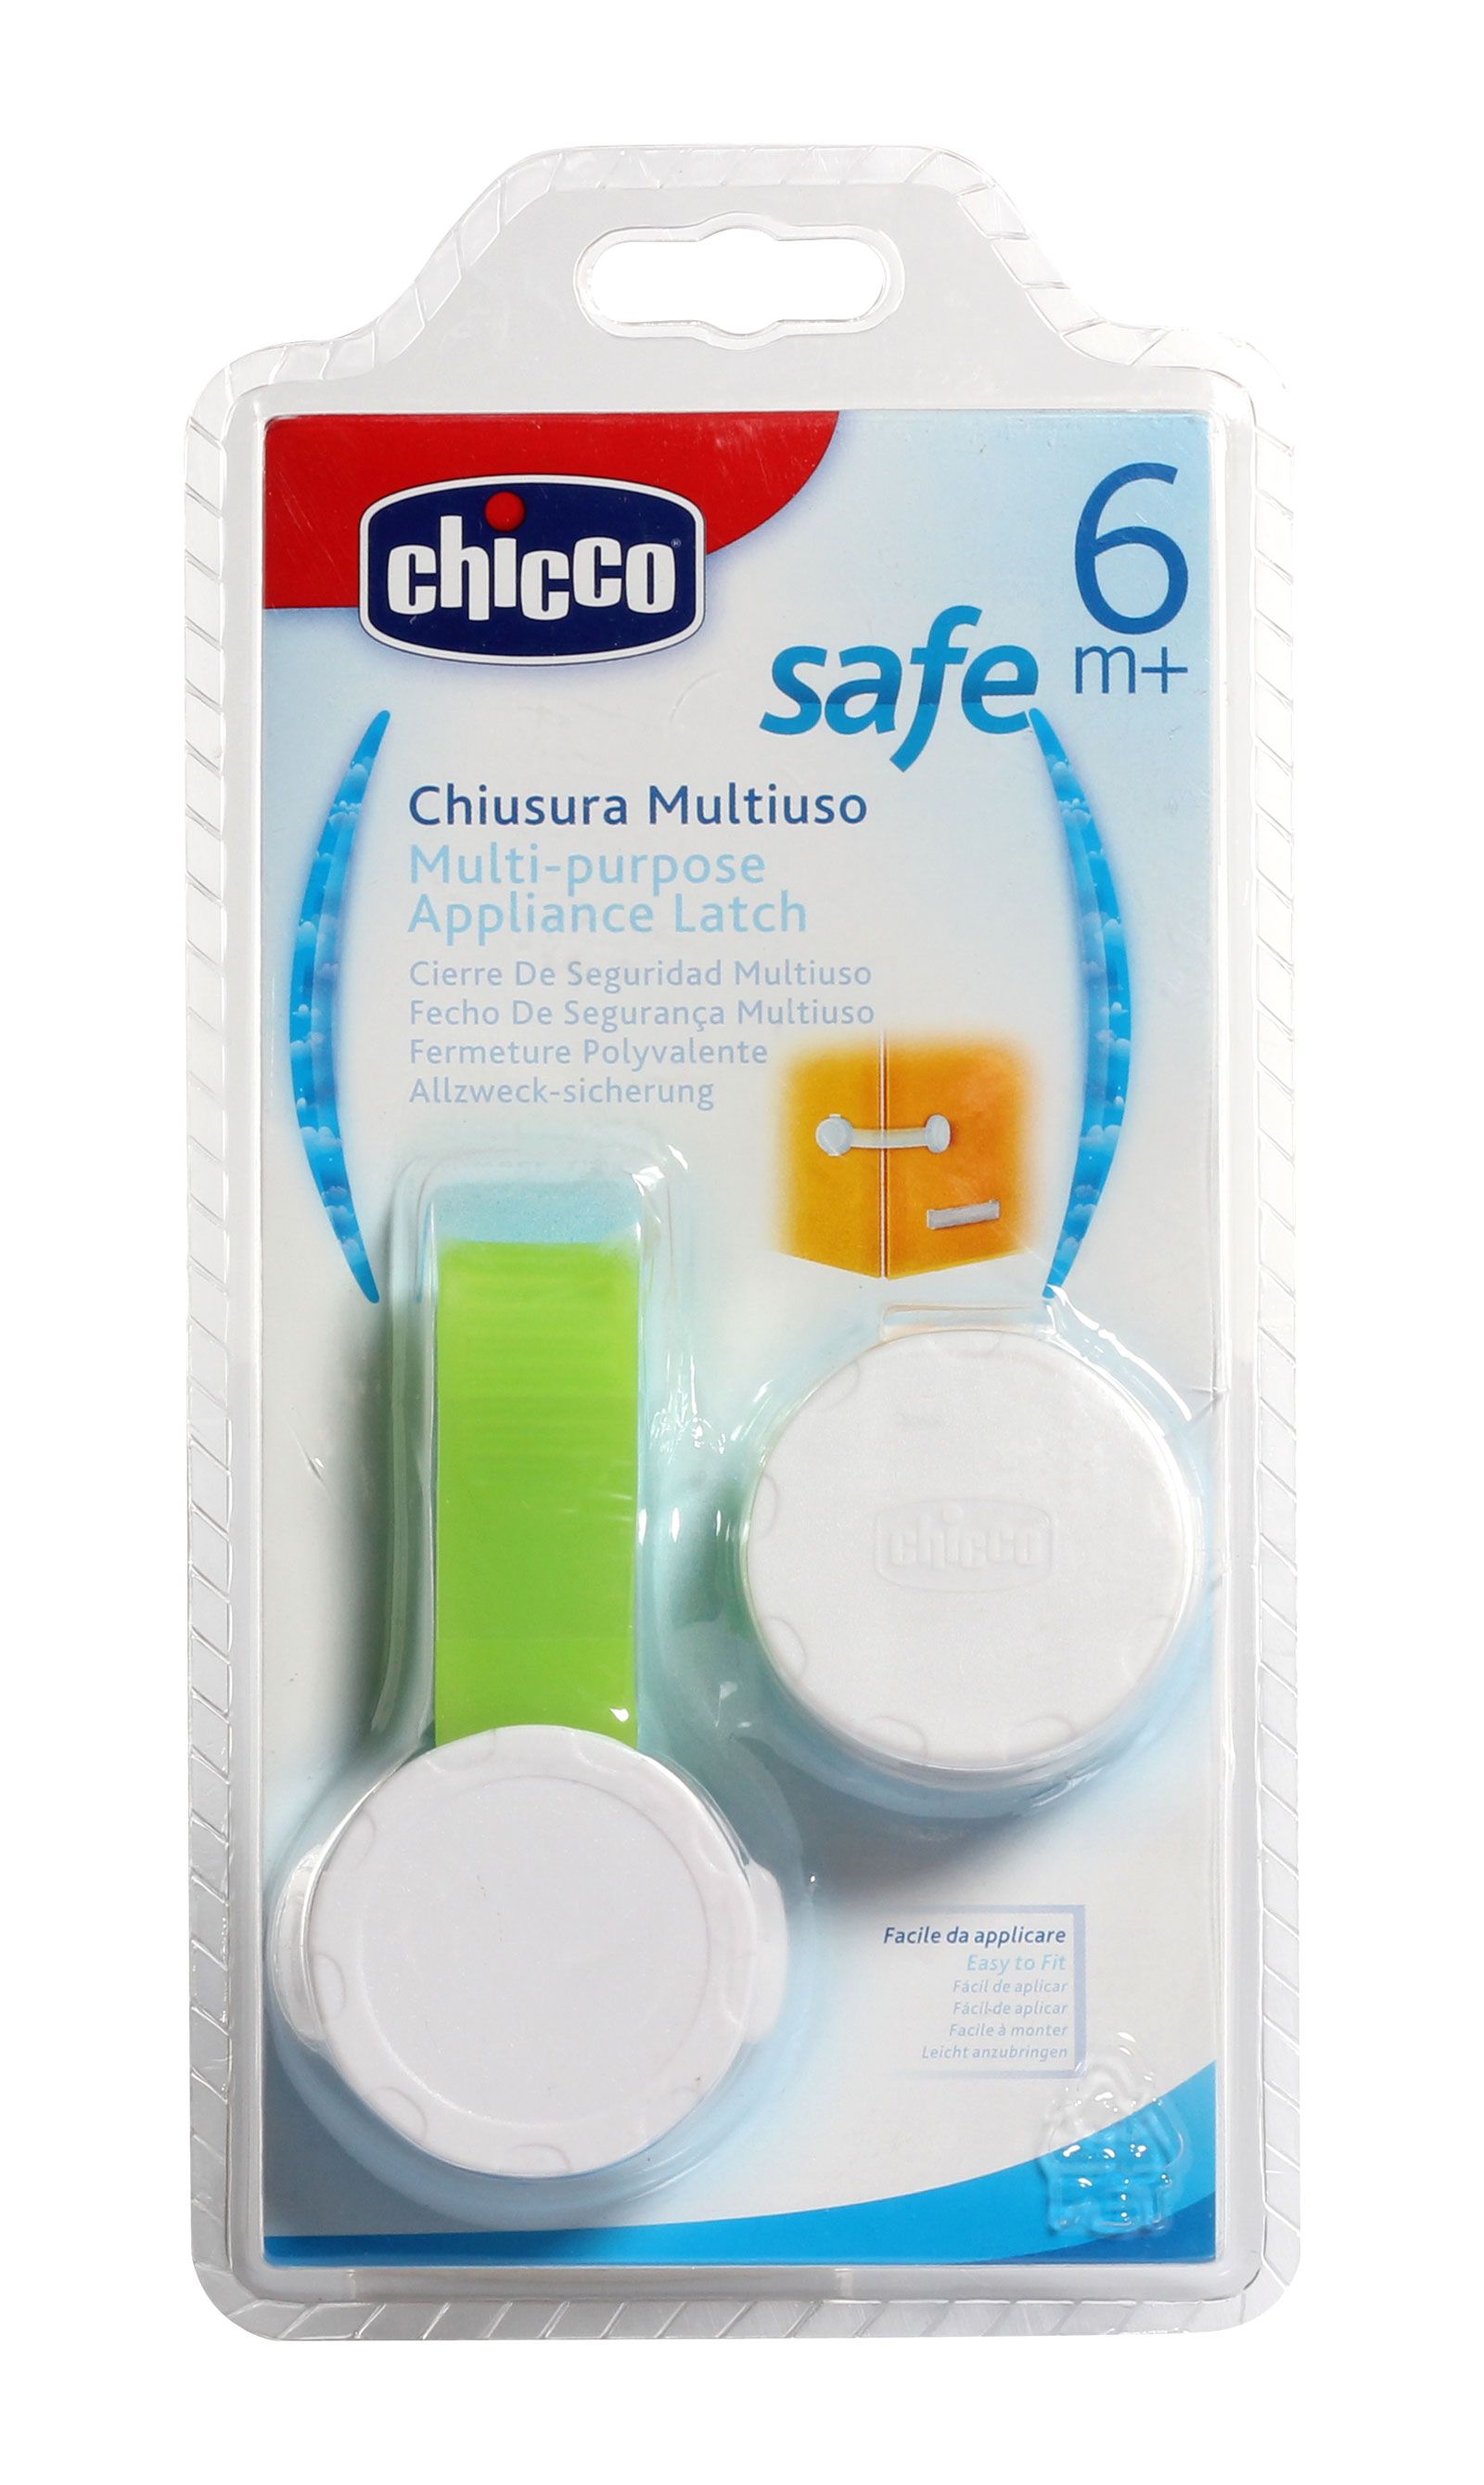 Chiusura Multiuso Multi Purpose Appliance Latch by Chicco